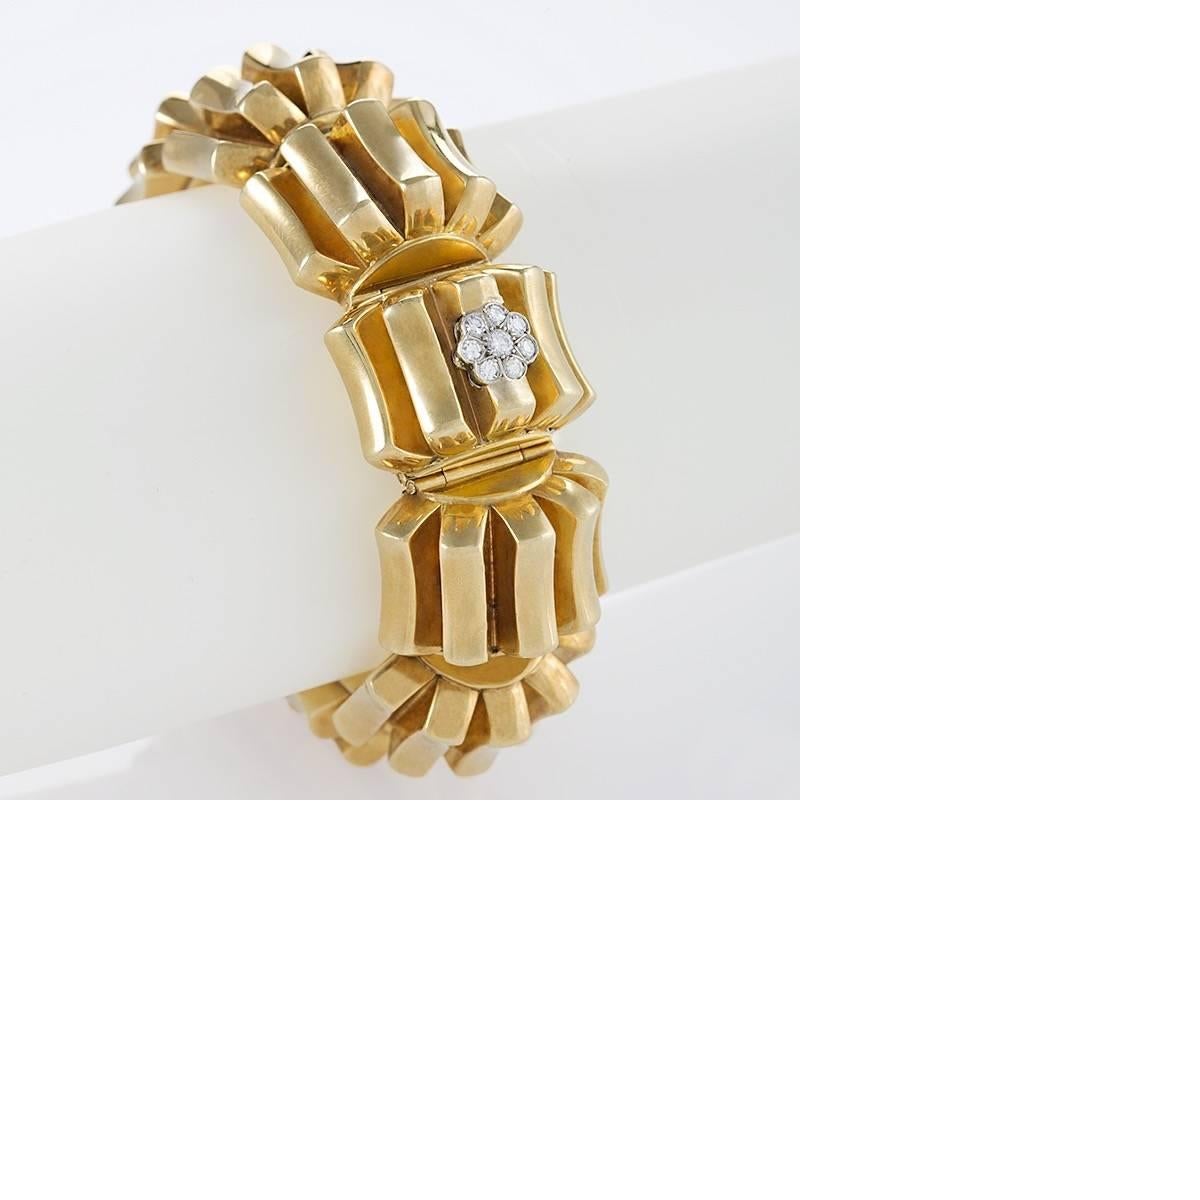 Cette magnifique montre bracelet Omega en or et diamants, datant du milieu du 20e siècle, permet de suivre le temps de manière passionnante. Composé de dix sections bombées flexibles, les arêtes en or poli s'ouvrent en éventail, tandis que les